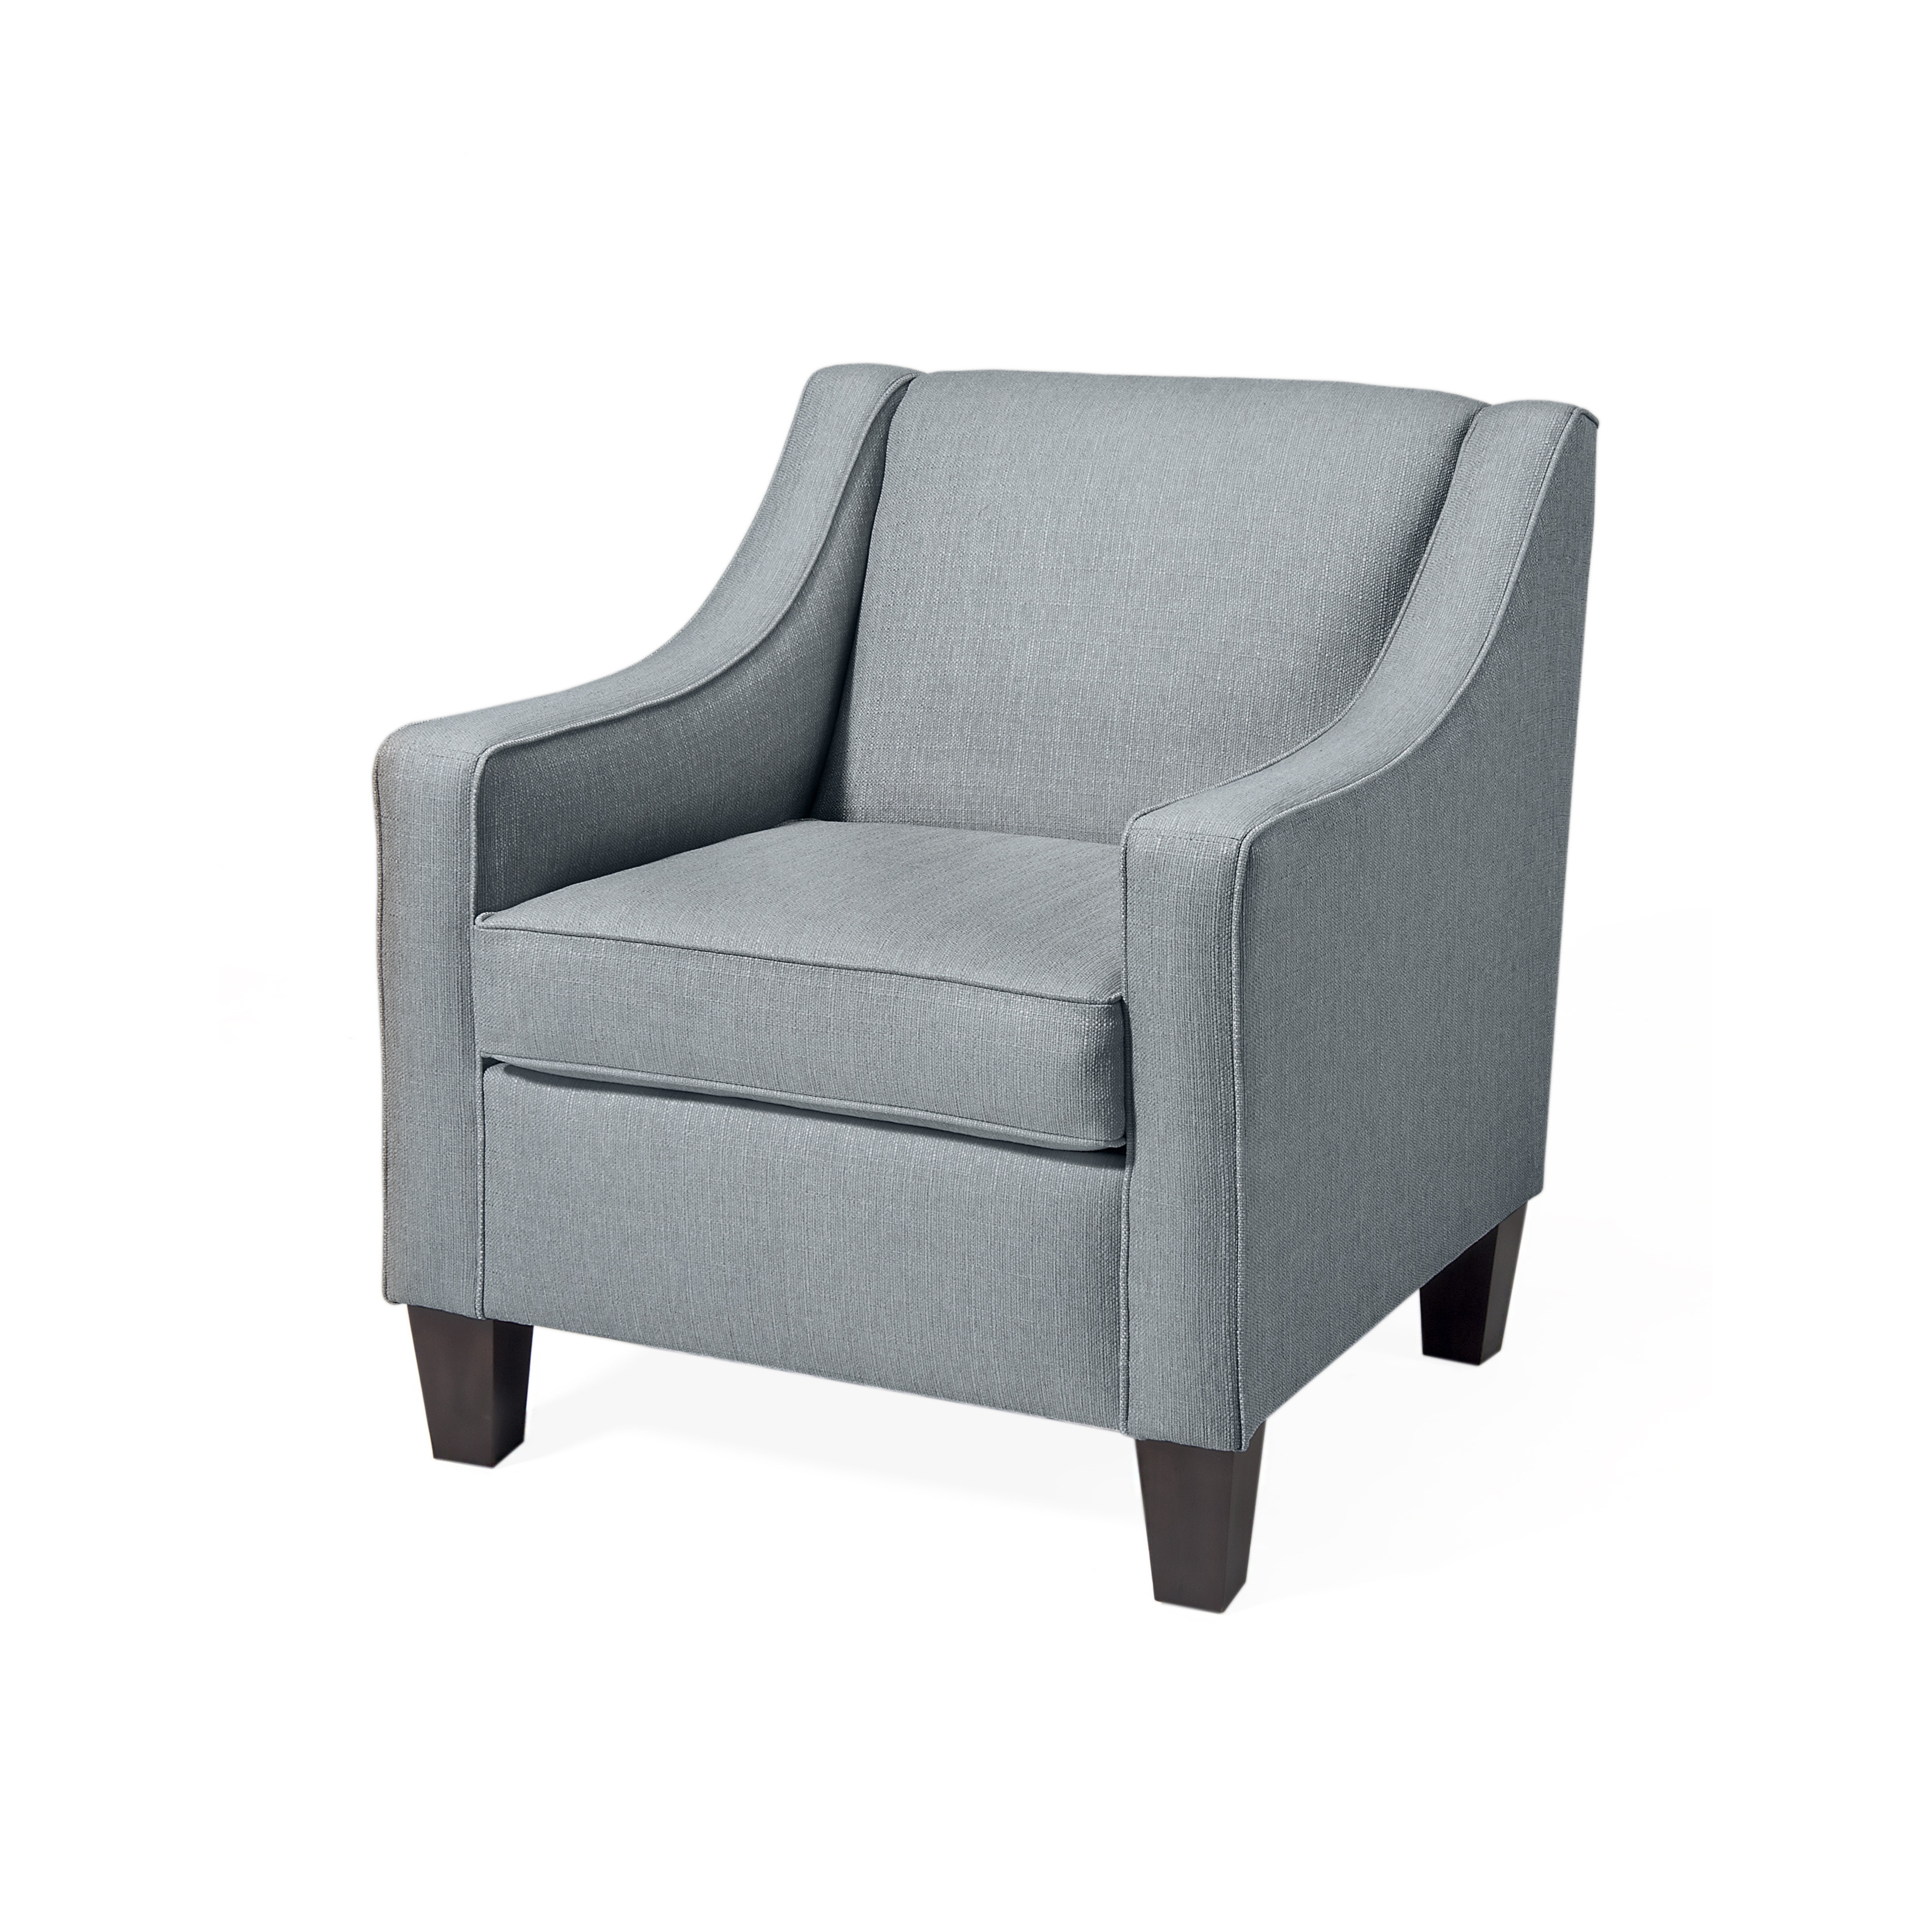 Edenton Club Chair-Spa - Image 0